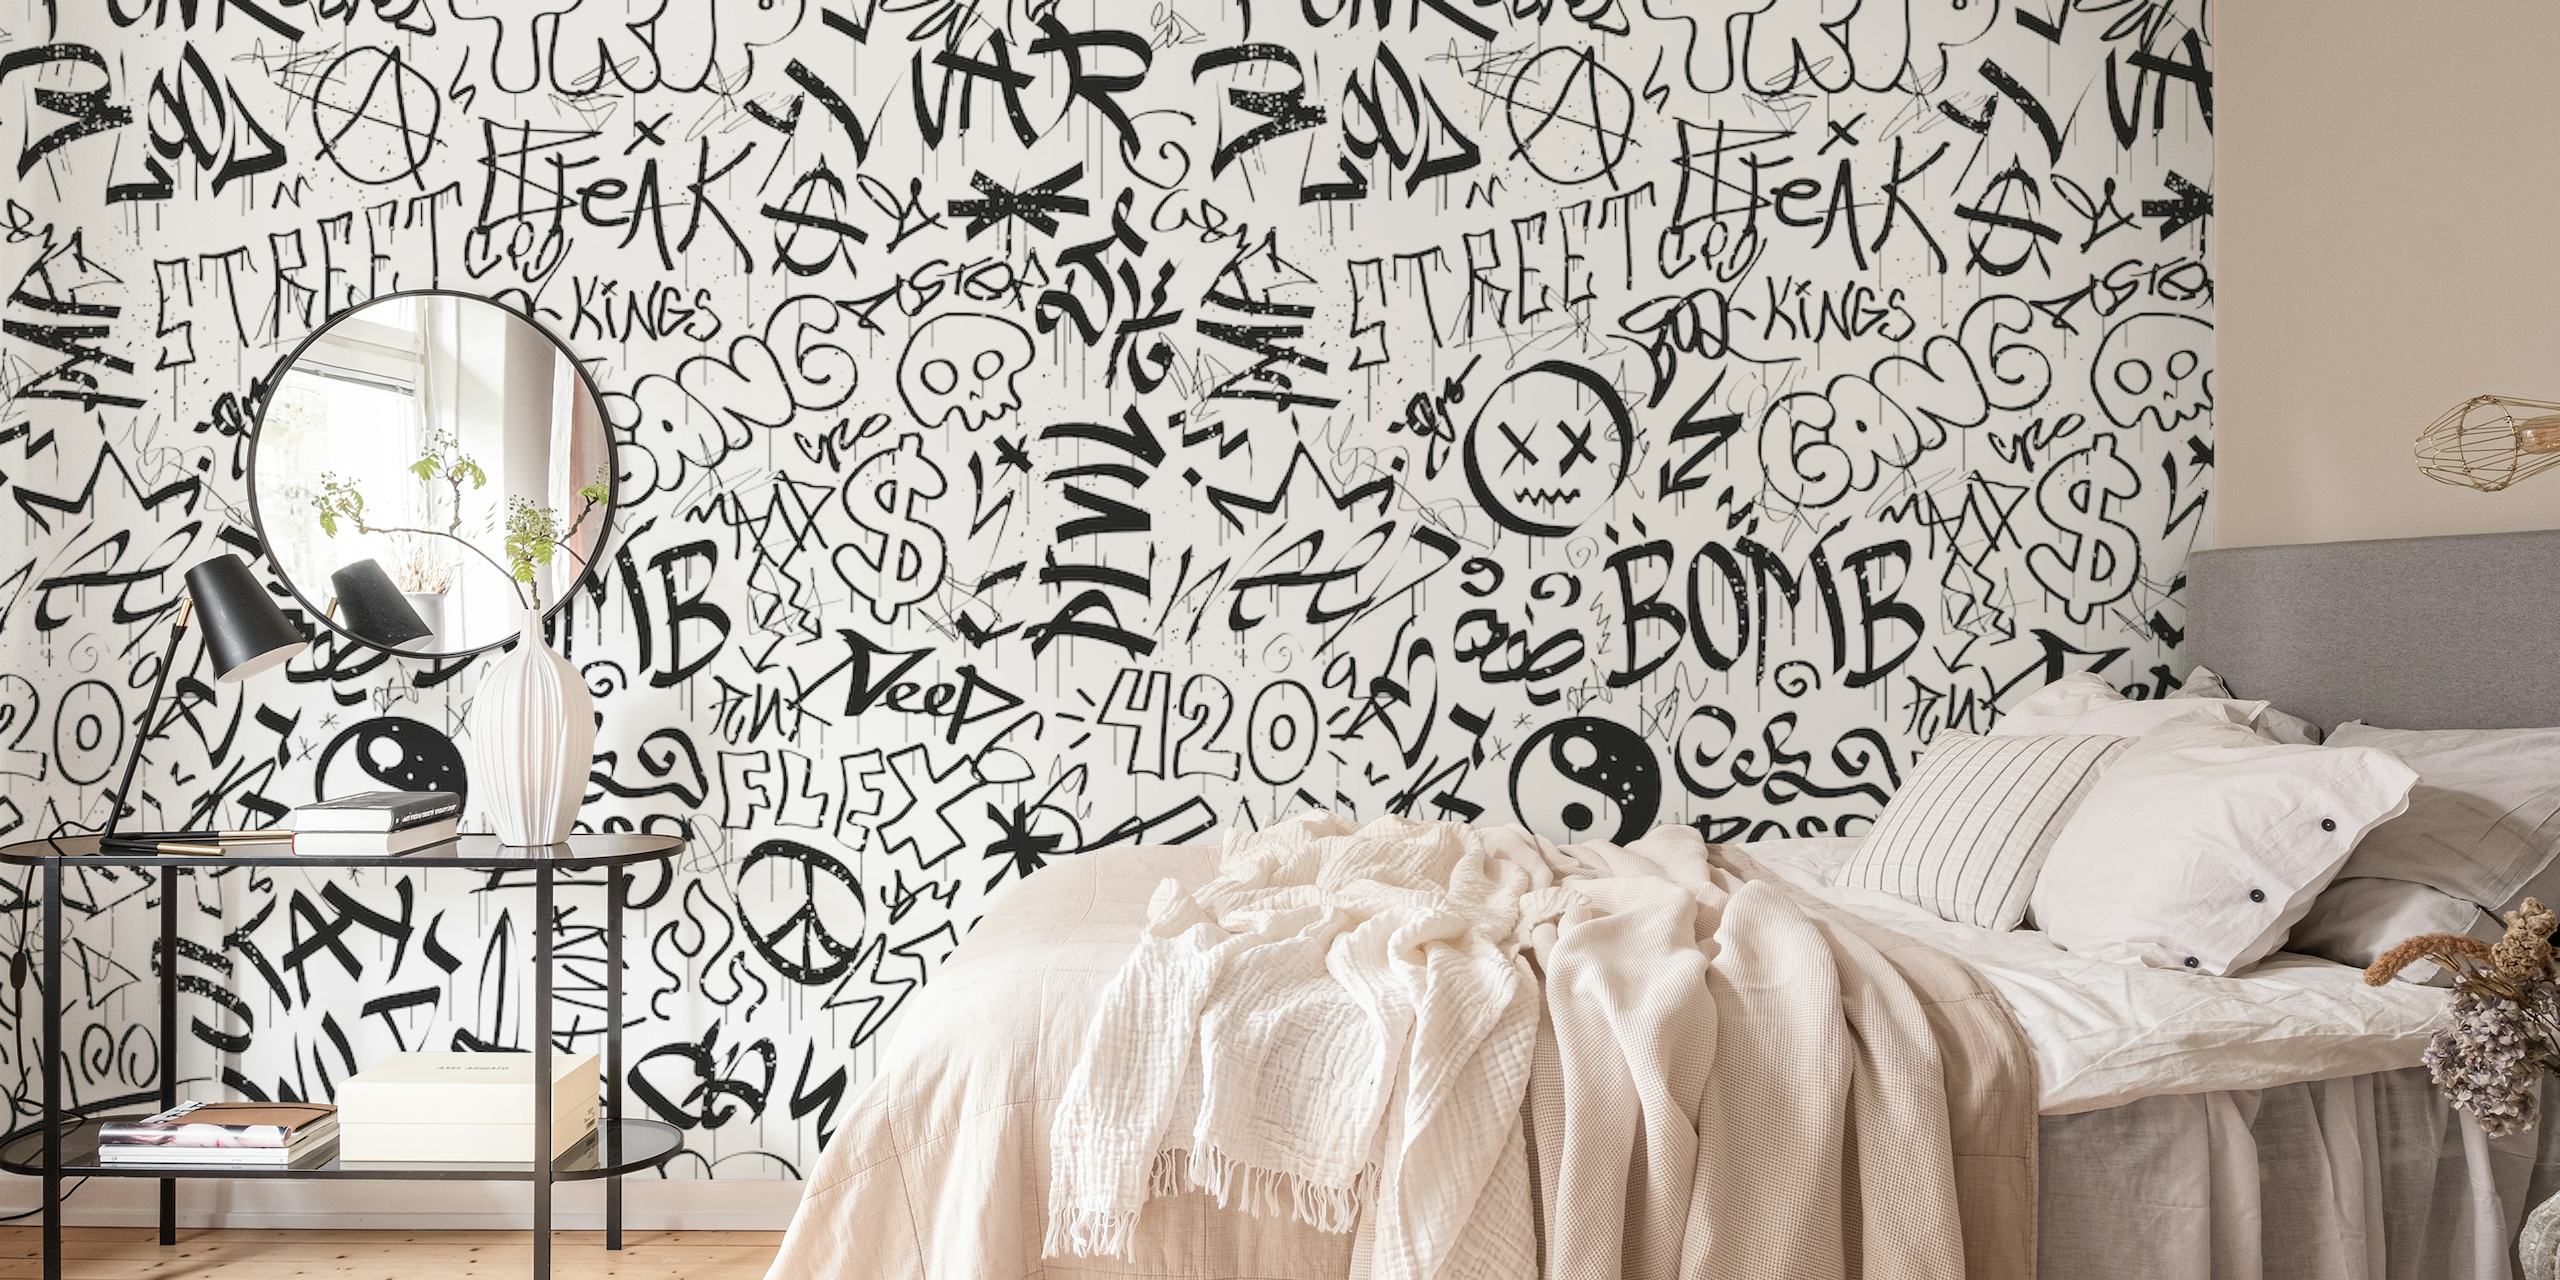 Mural de parede estilo graffiti em preto e branco com várias tags e personagens.